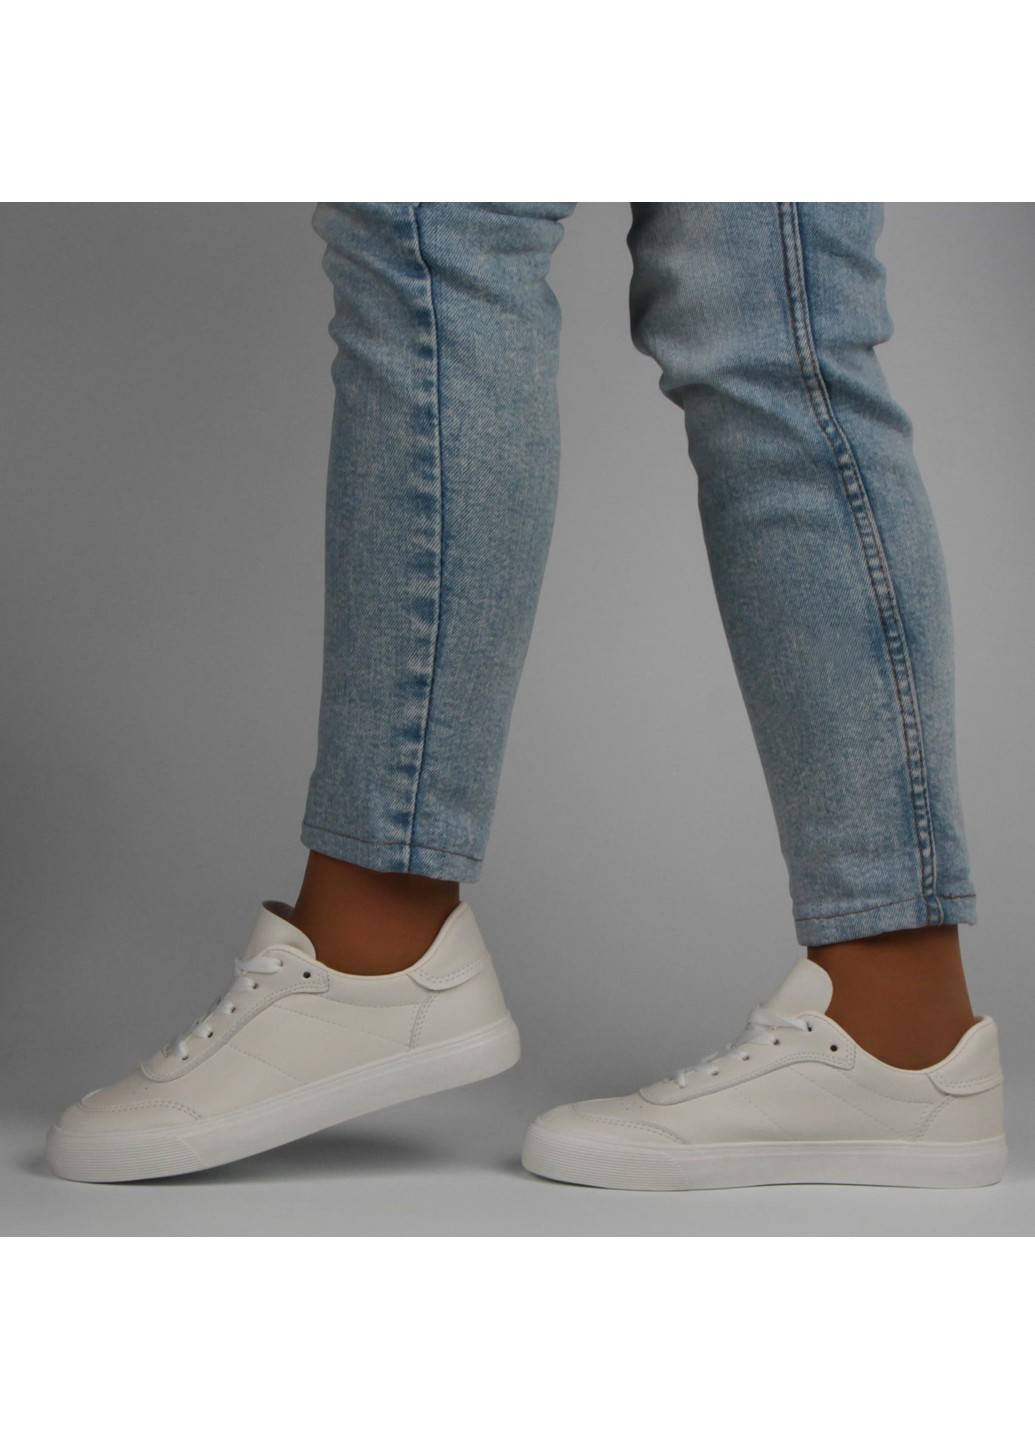 Белые демисезонные женские кроссовки 198015 Renzoni